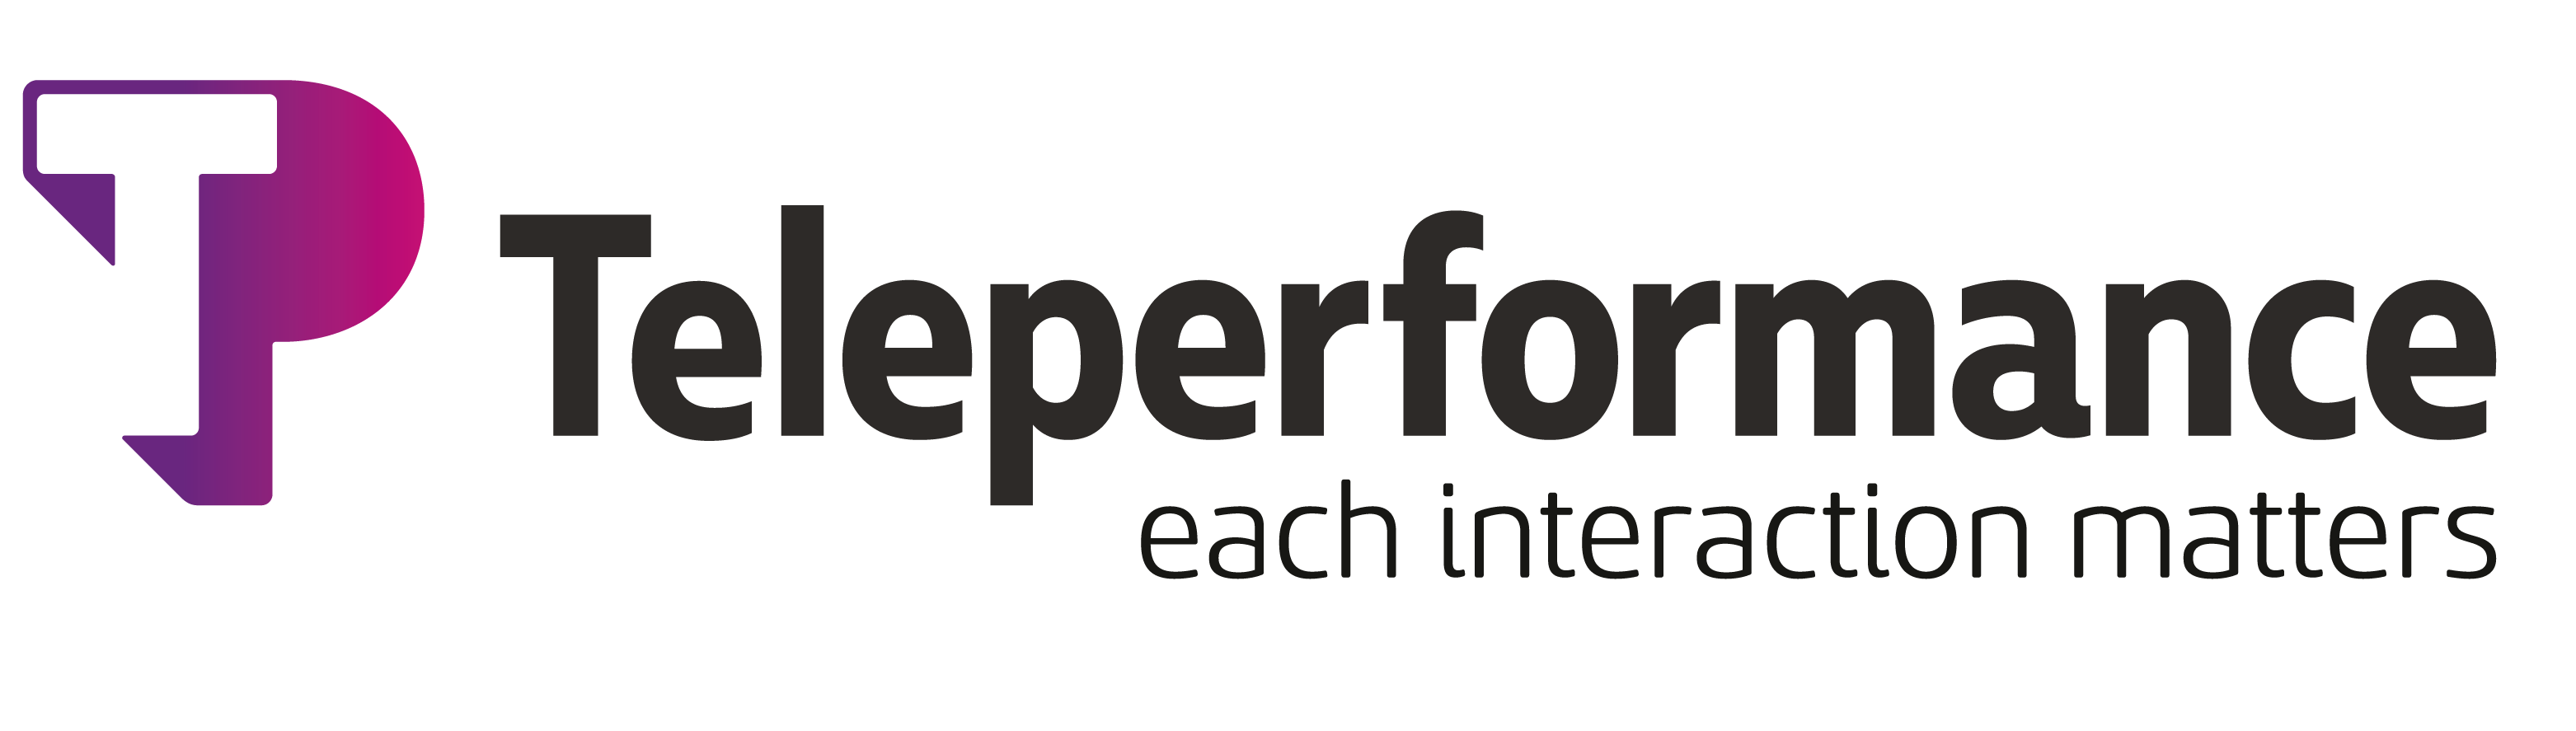 Teleperformance (TEP) Dividends